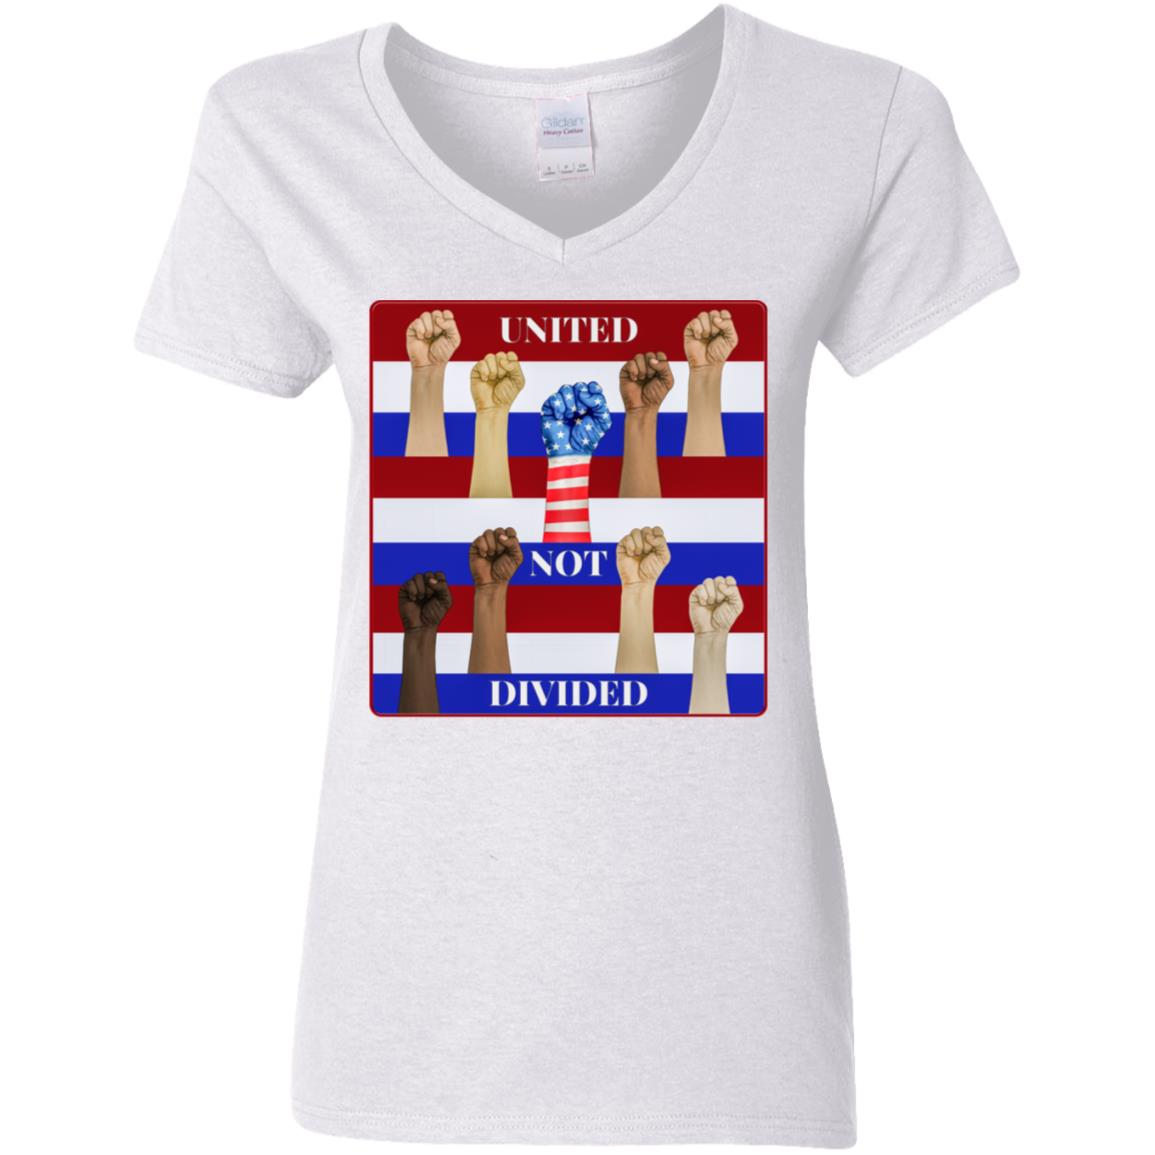 United Not Divided - Women's V-Neck T Shirt